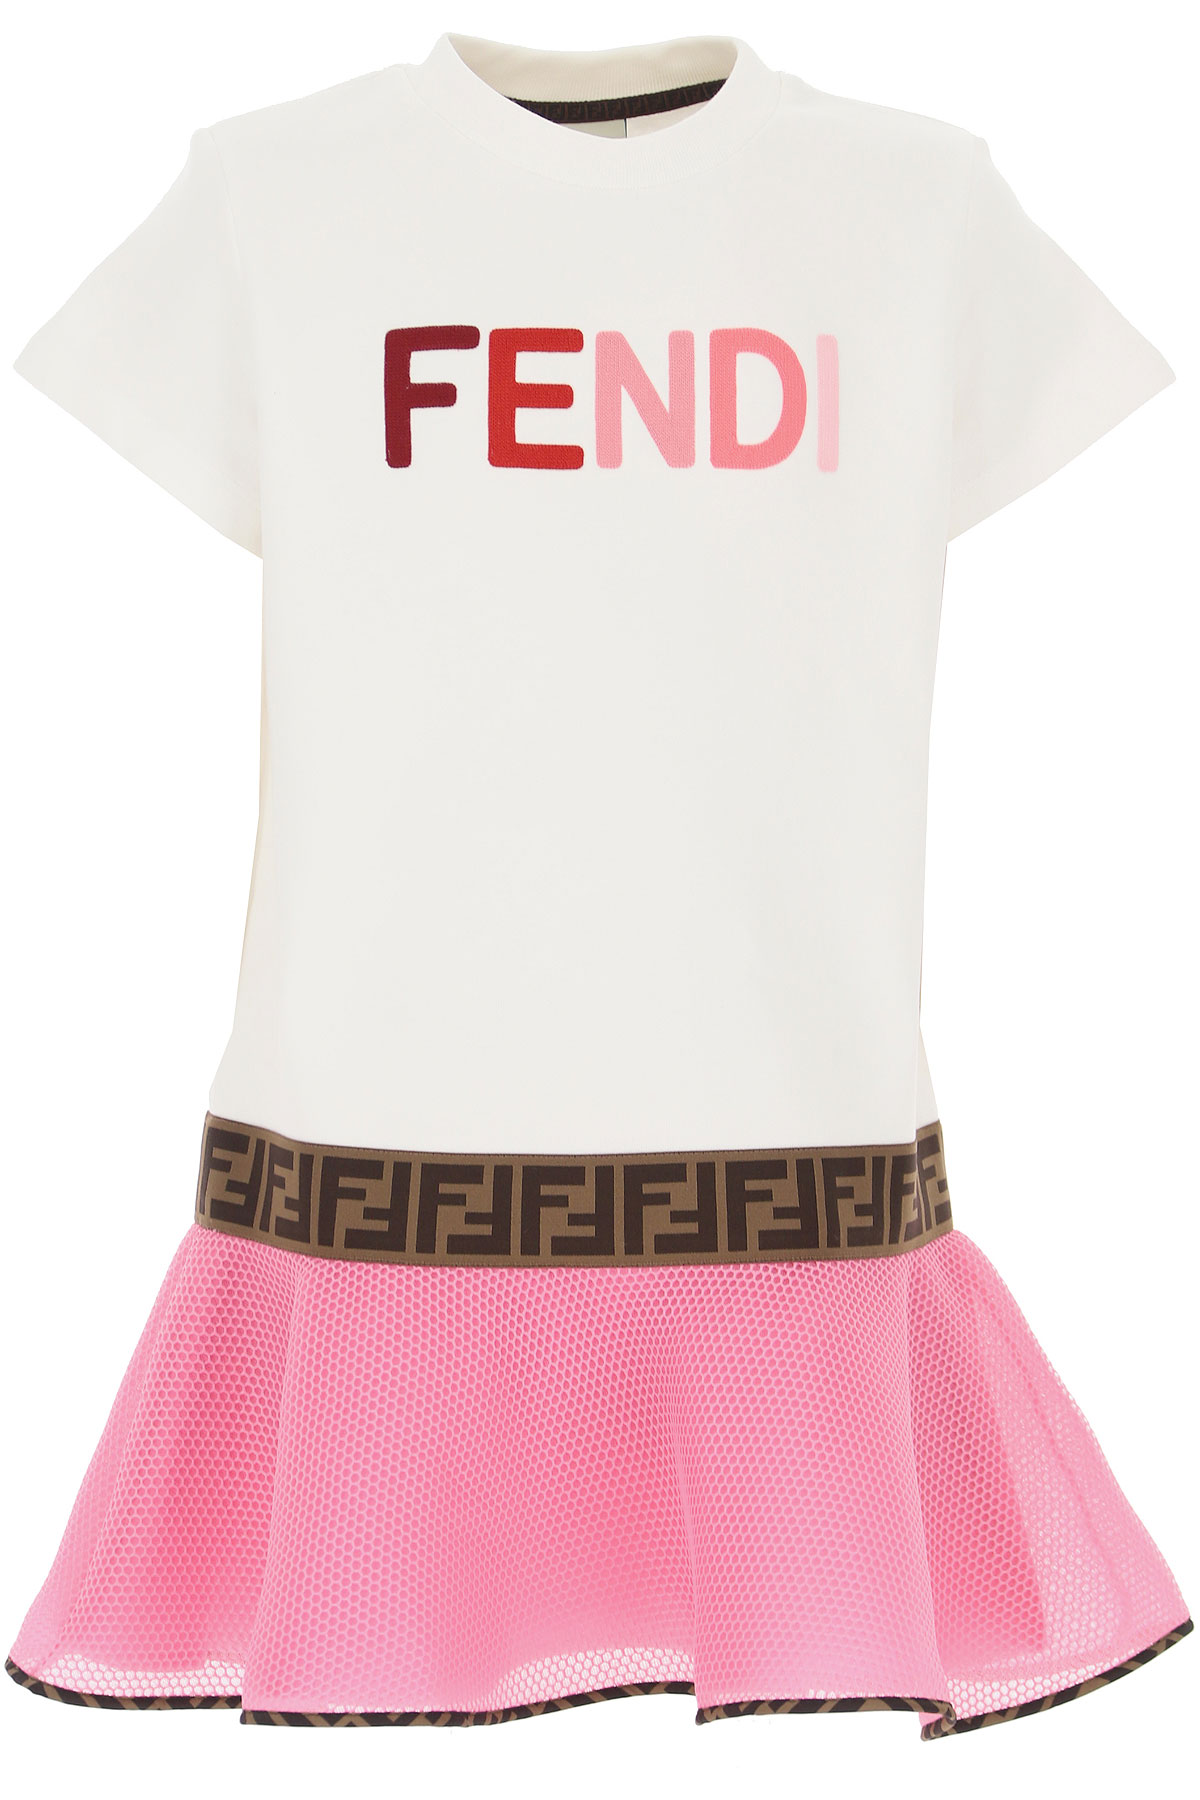 Girls Clothing Fendi, Style code: jfb381-aczw-f0yt7